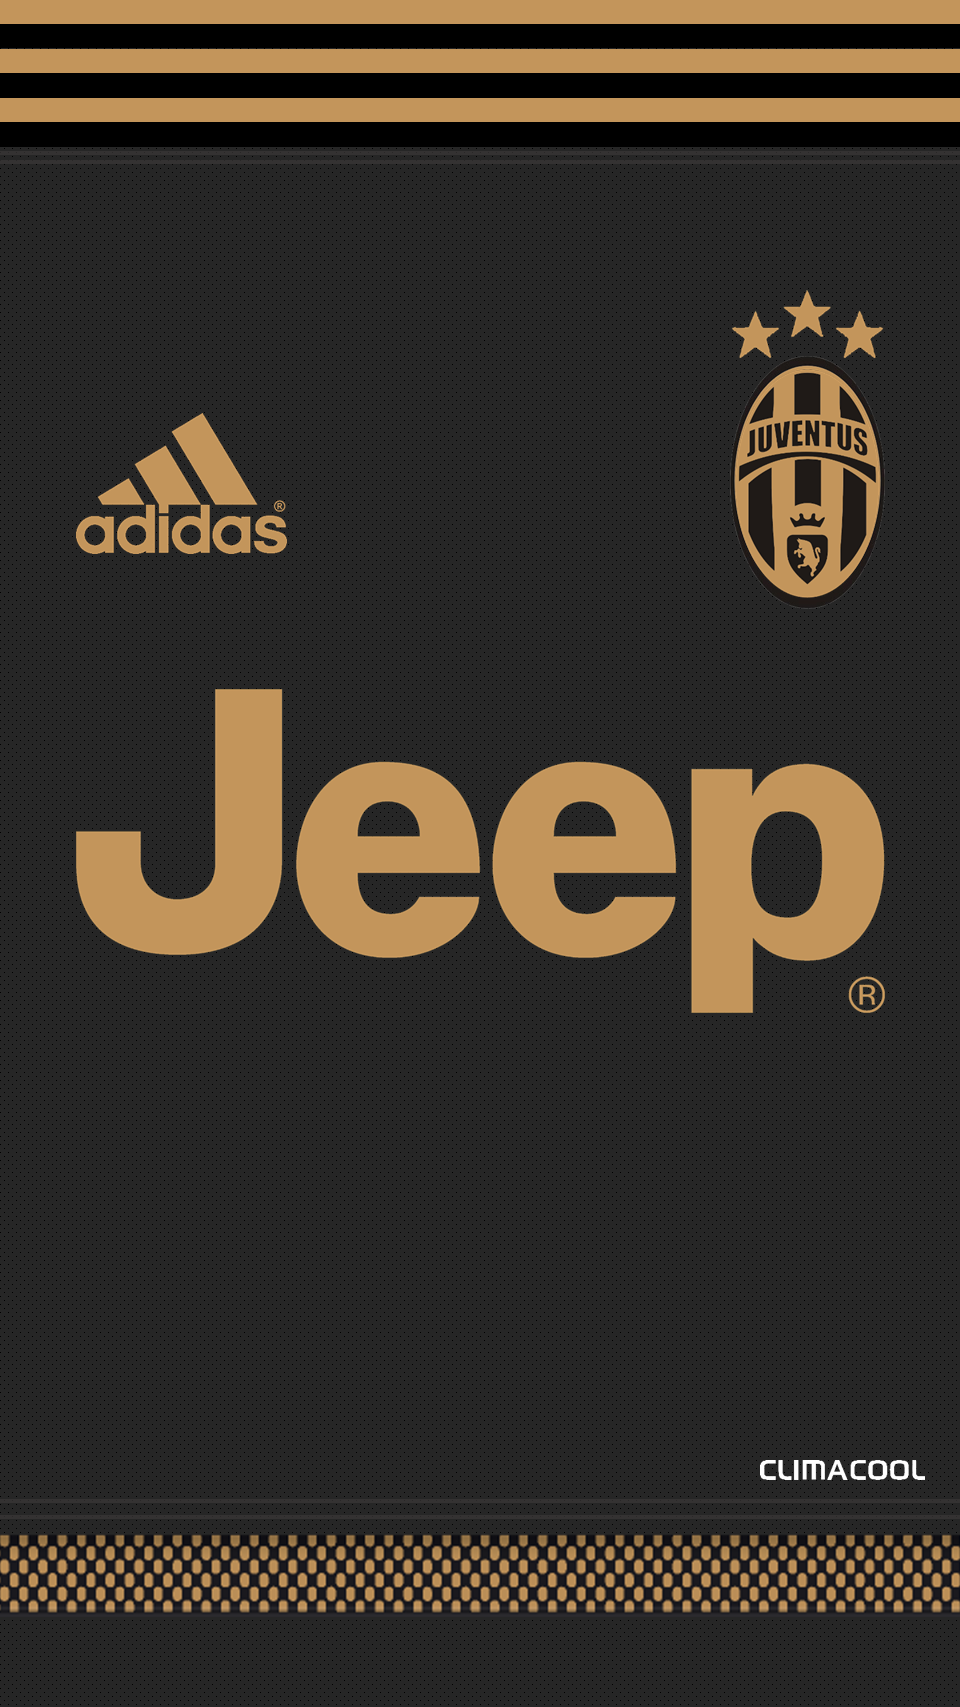 Juventus3_Simple.png